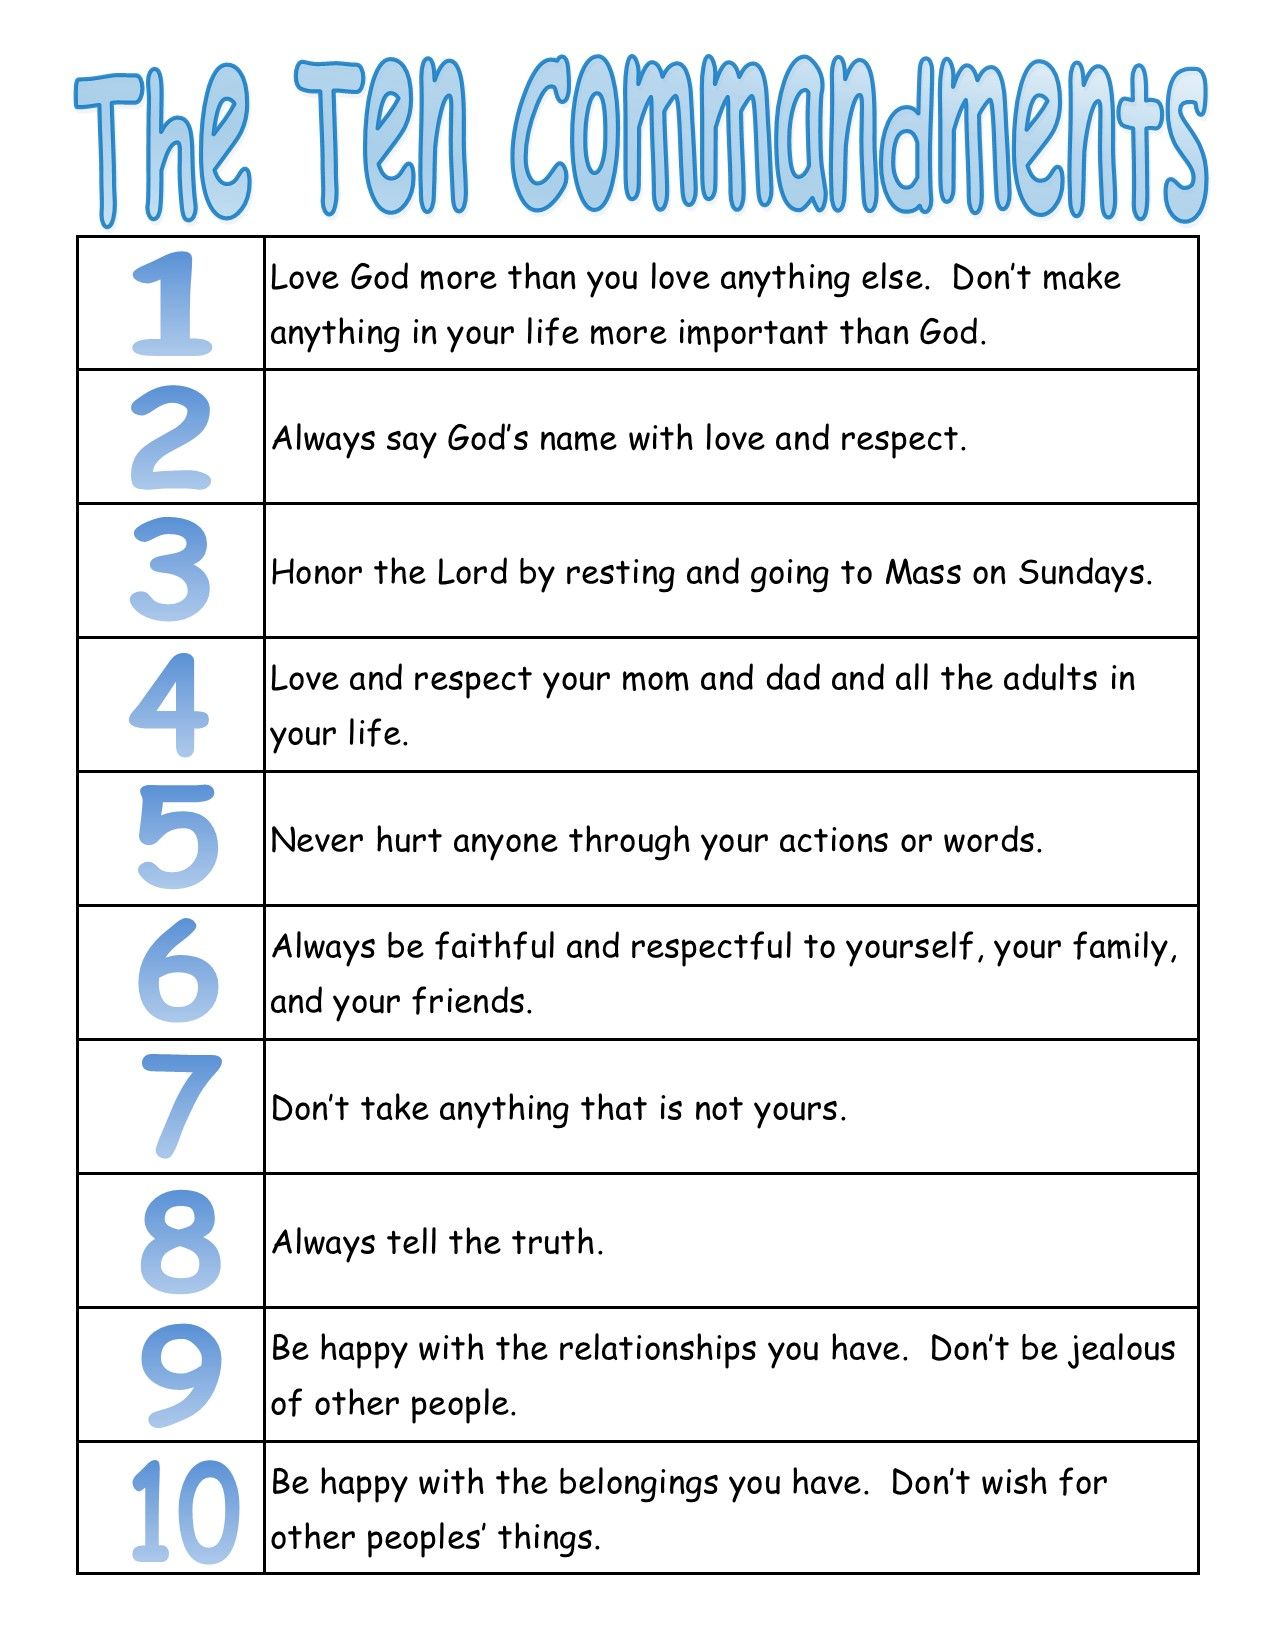 ten-commandments-bible-quiz-for-kids-free-download-bible-quiz-bible-stories-for-kids